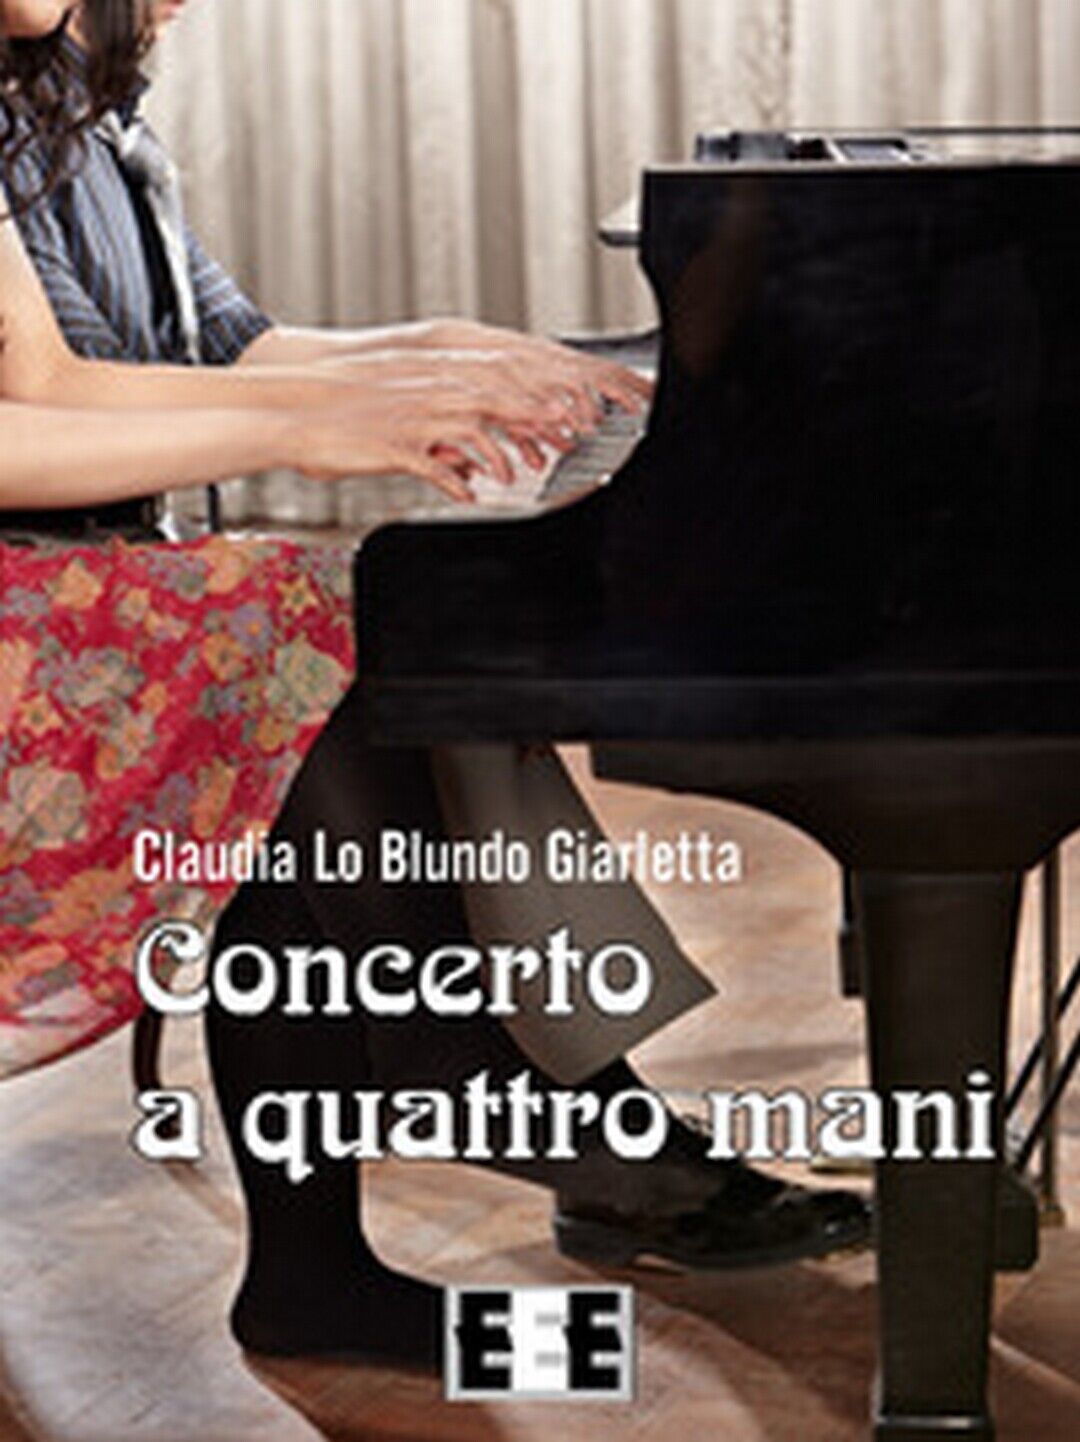 Concerto a quattro mani  di Lo Blundo Giarletta Claudia,  2017,  Eee-edizioni 